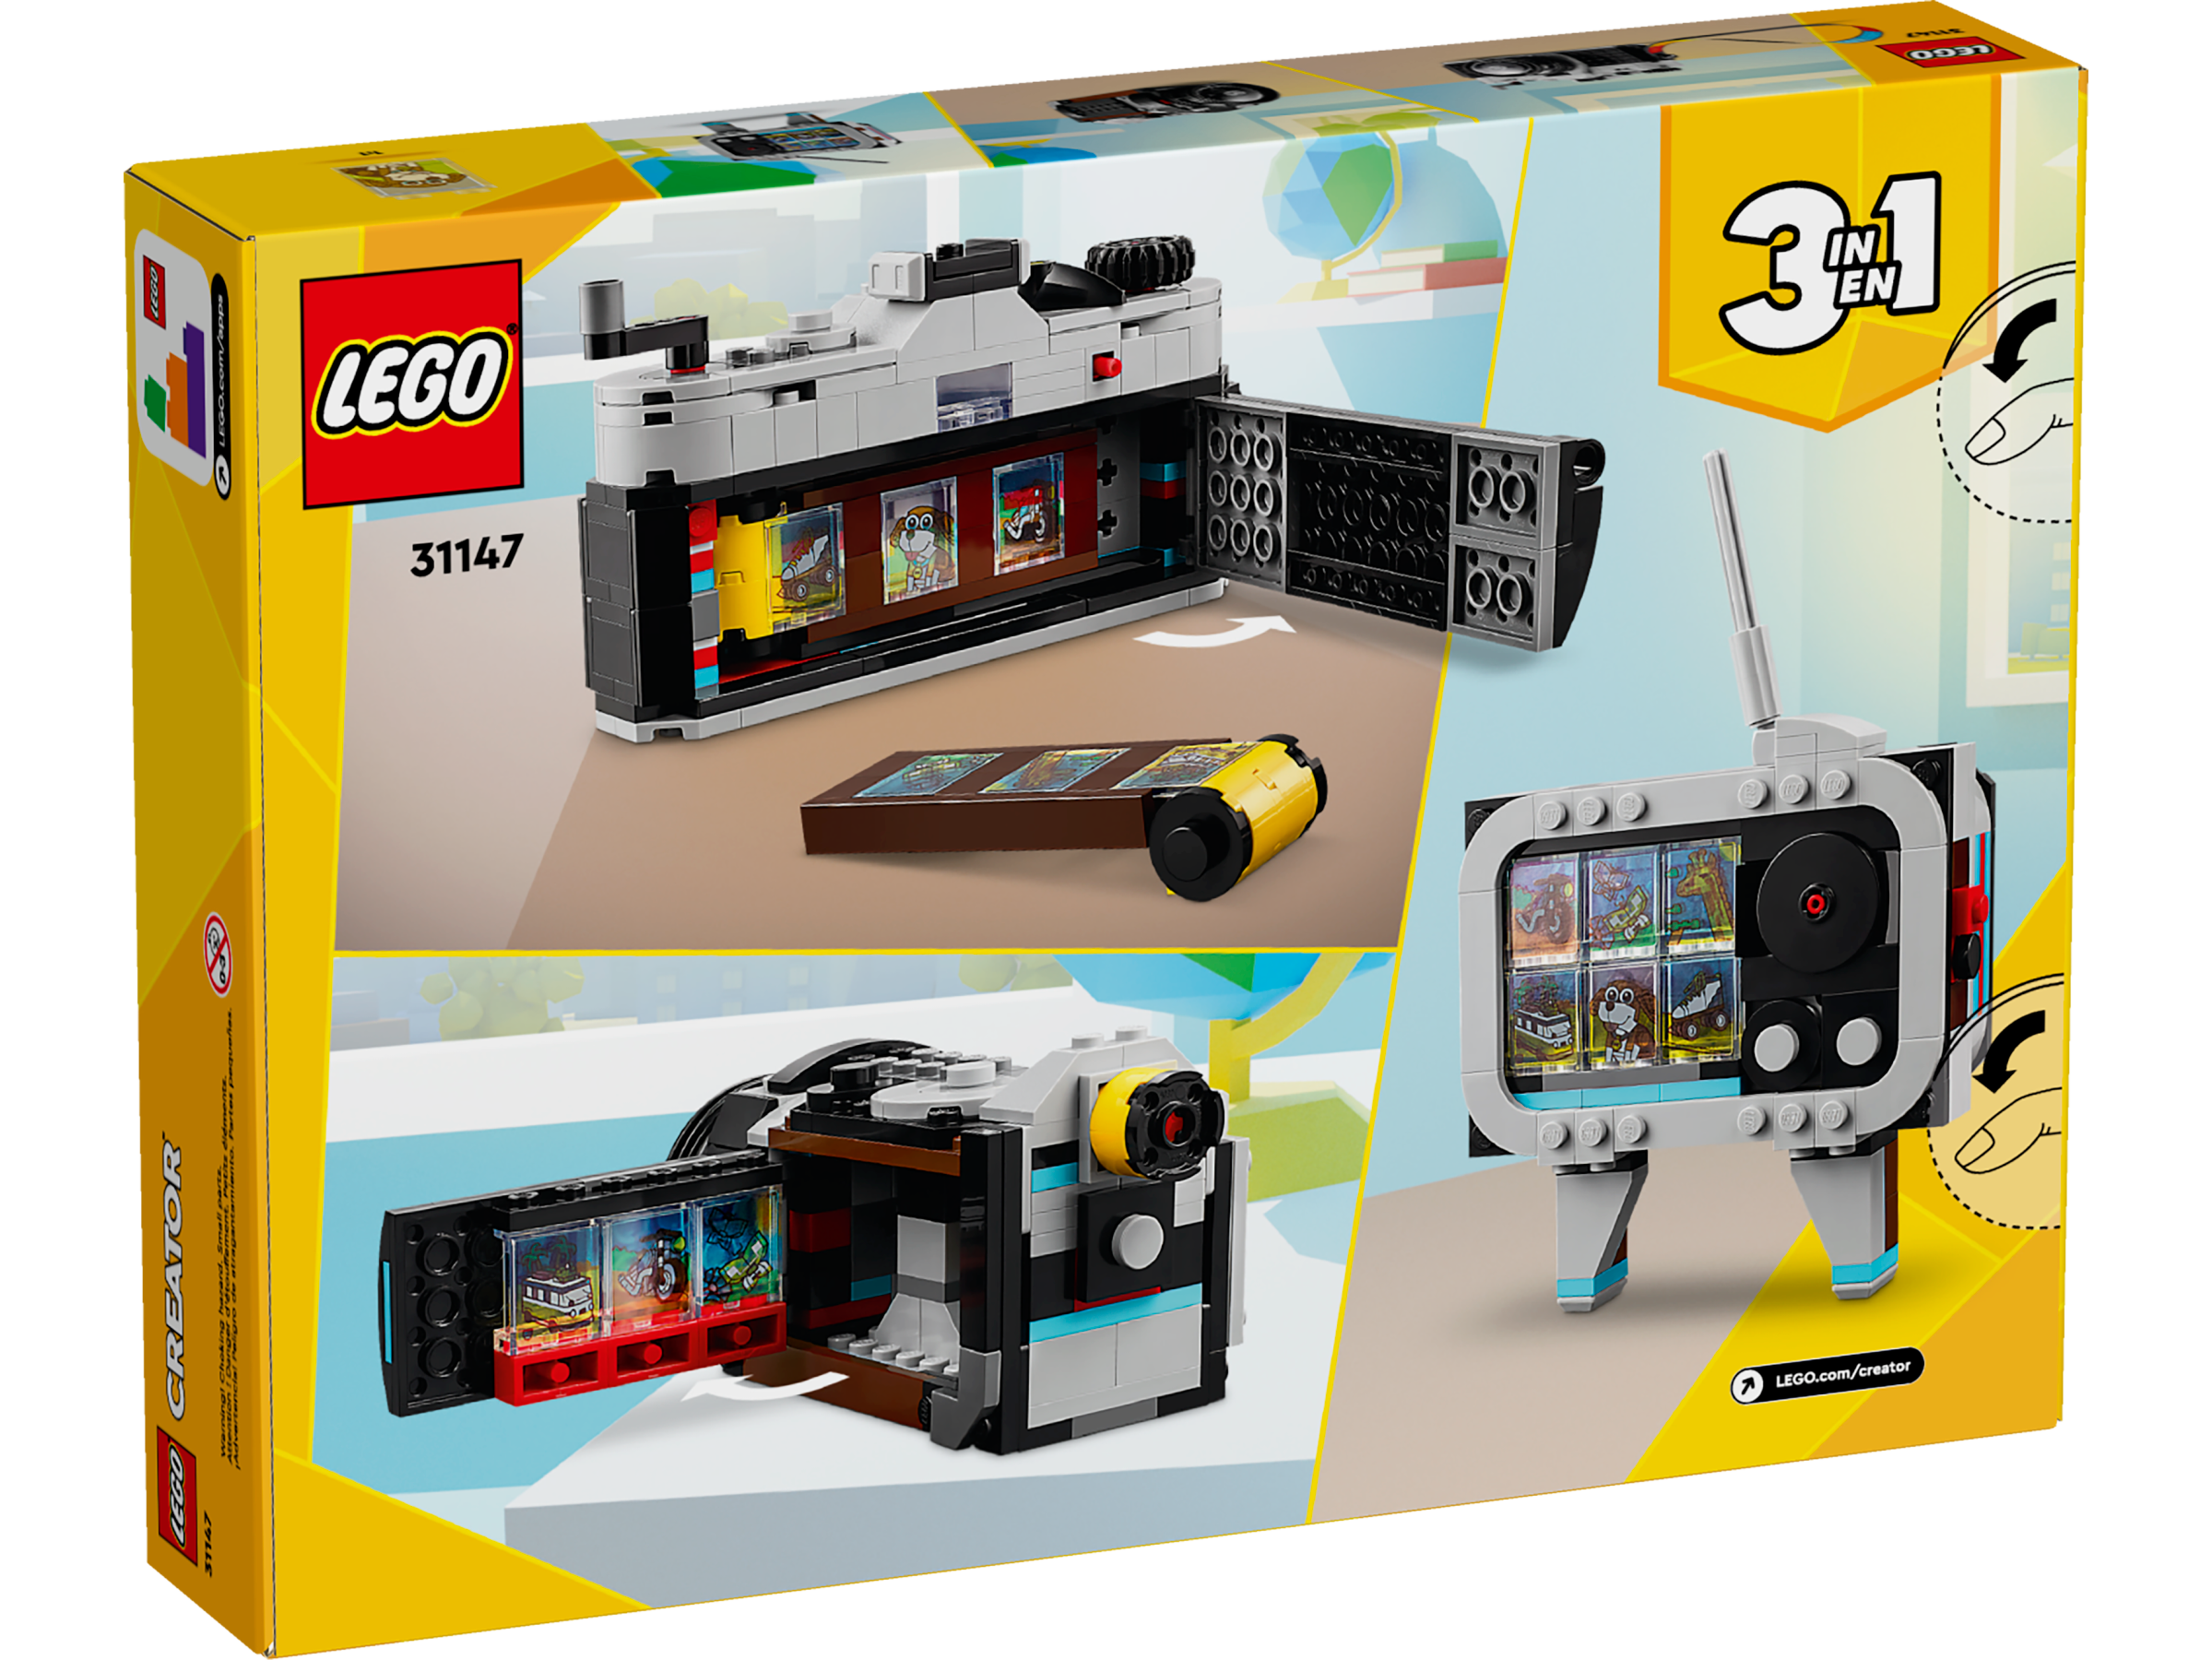 Solo 19,99€ per la fotocamera LEGO 3-in-1: super affare su